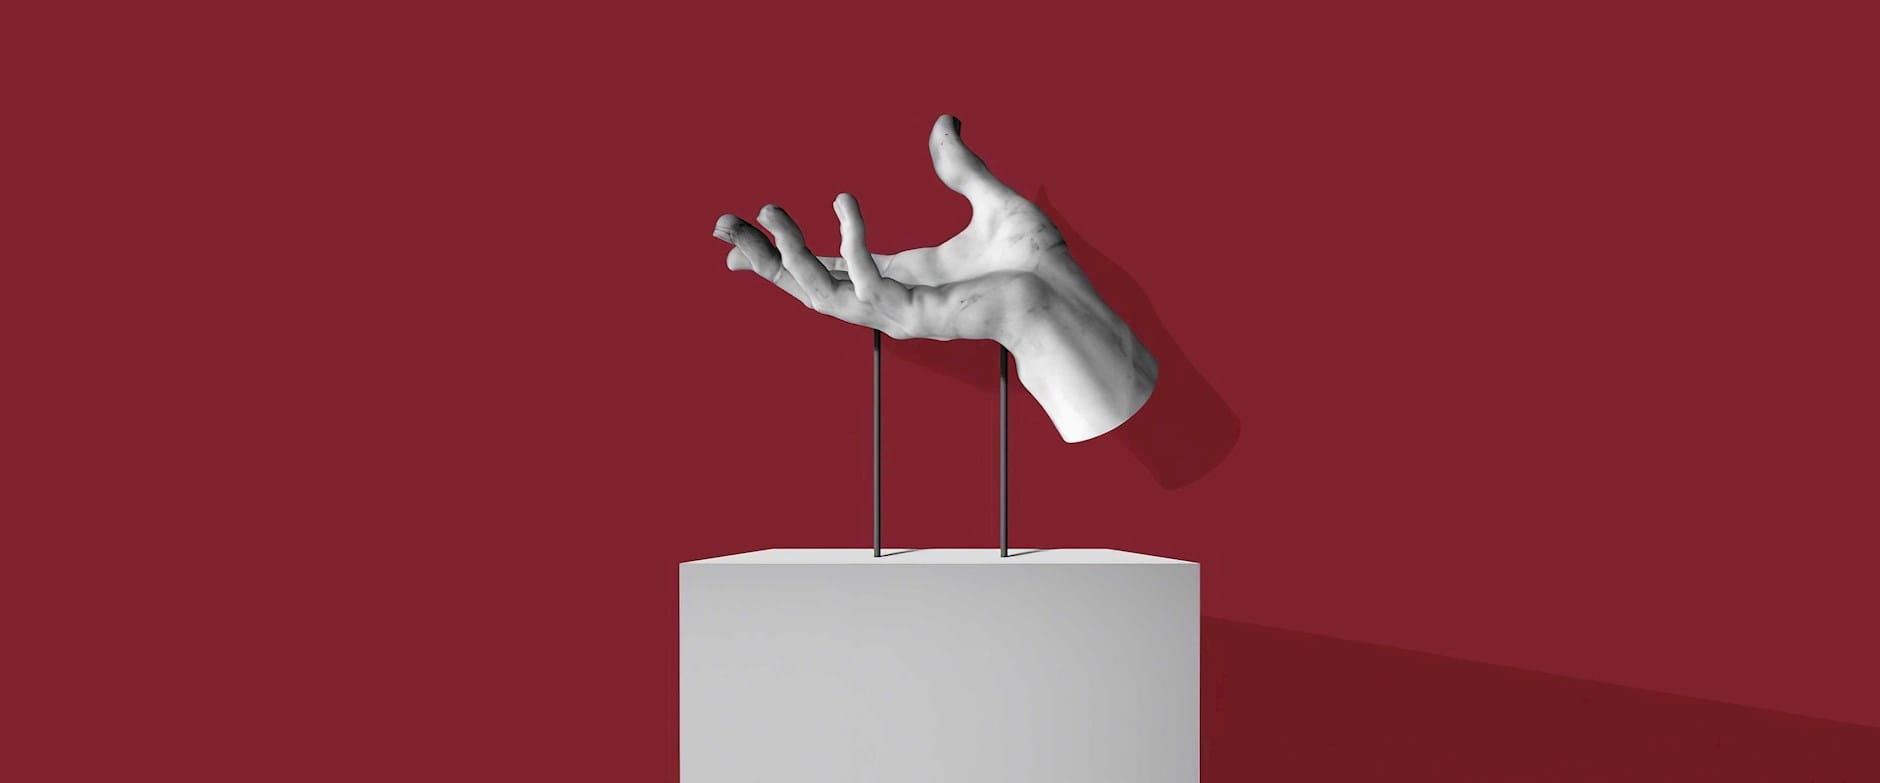 Sculpture of an open palmed hand